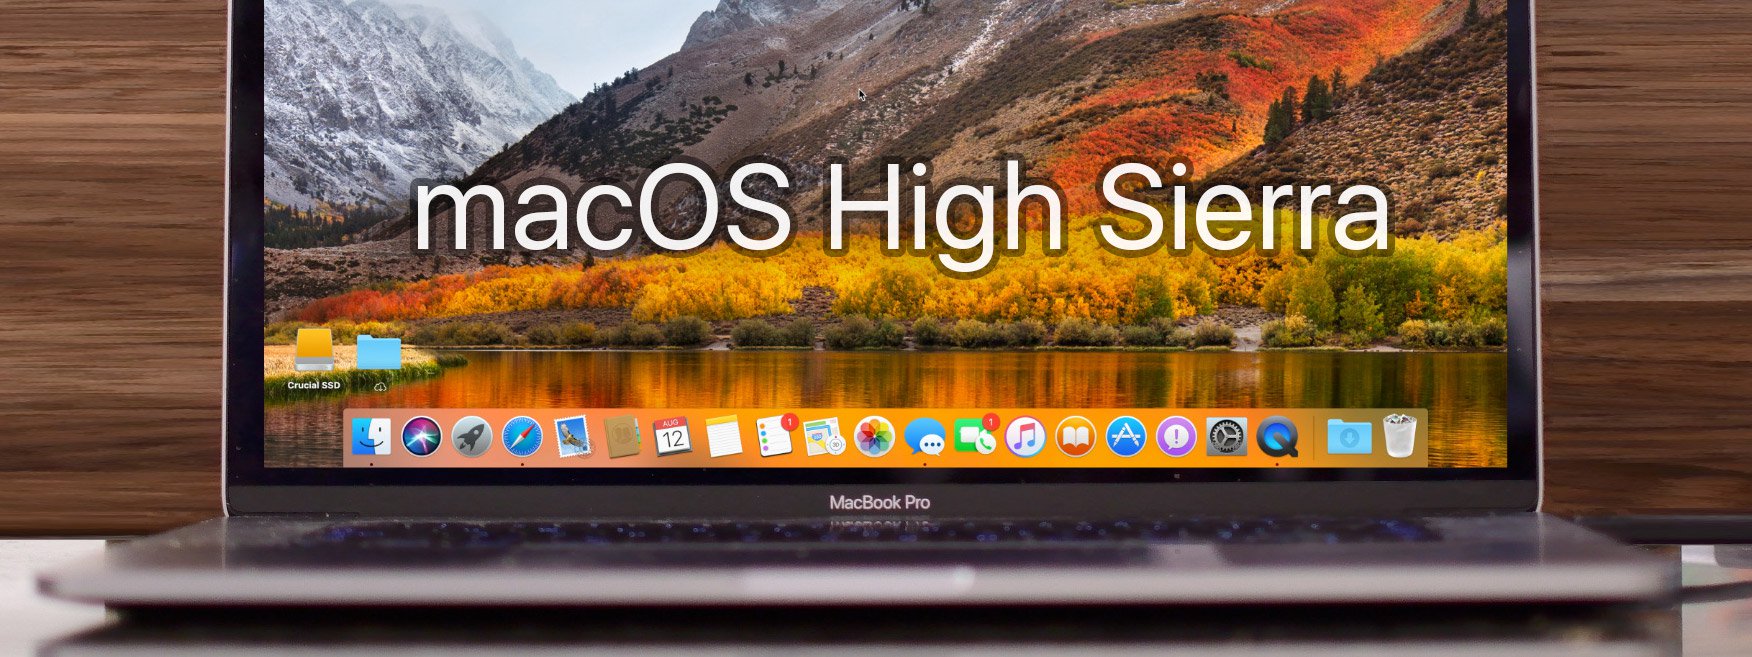 macOS High Sierra cho phép đăng nhập quyền root chỉ bằng cách click chuột 2 lần!